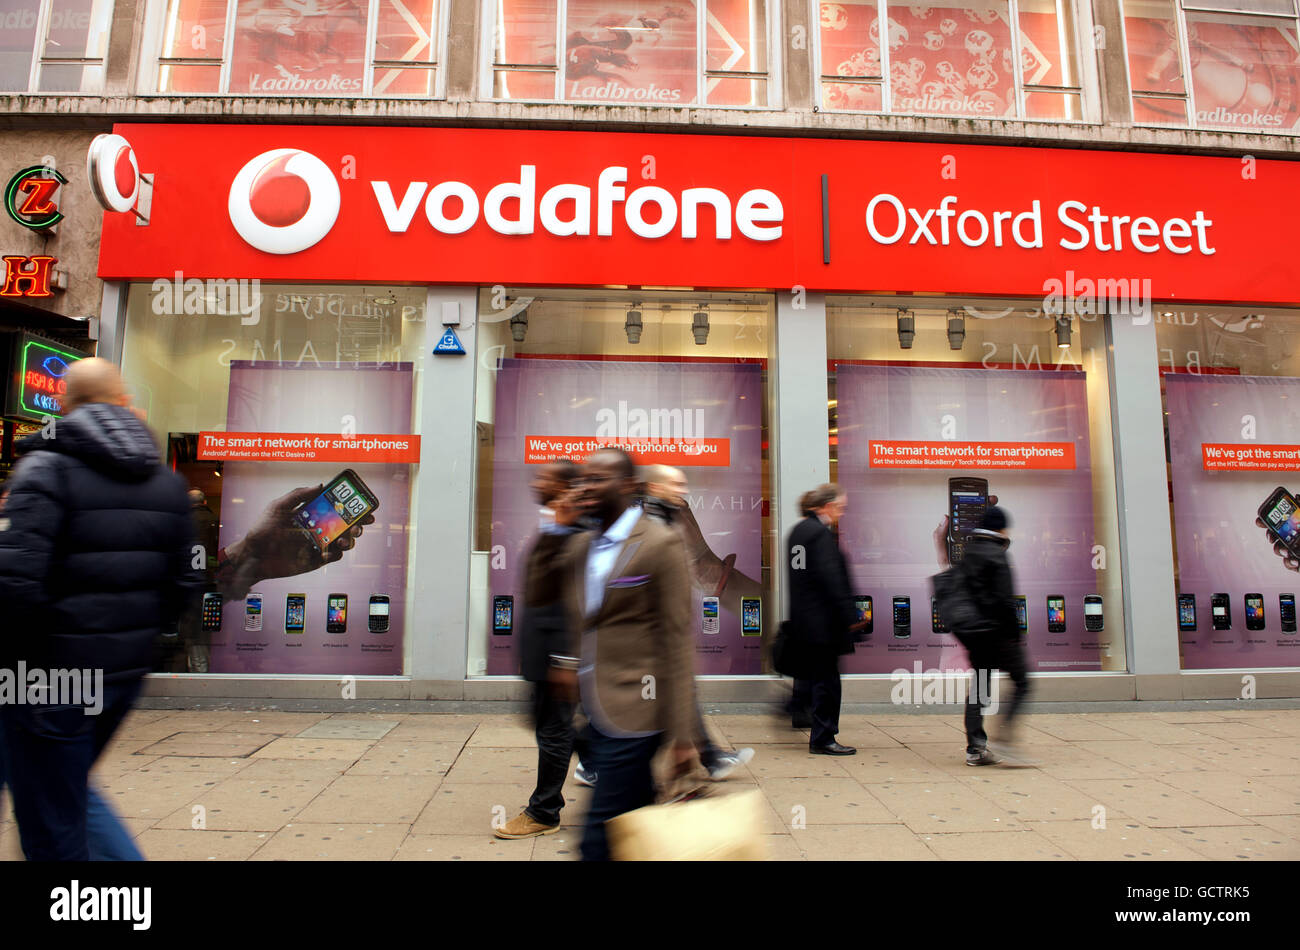 Neues Vodafone Signage. Eine allgemeine Ansicht des vodafone-Geschäfts in der Oxford Street, London Stockfoto